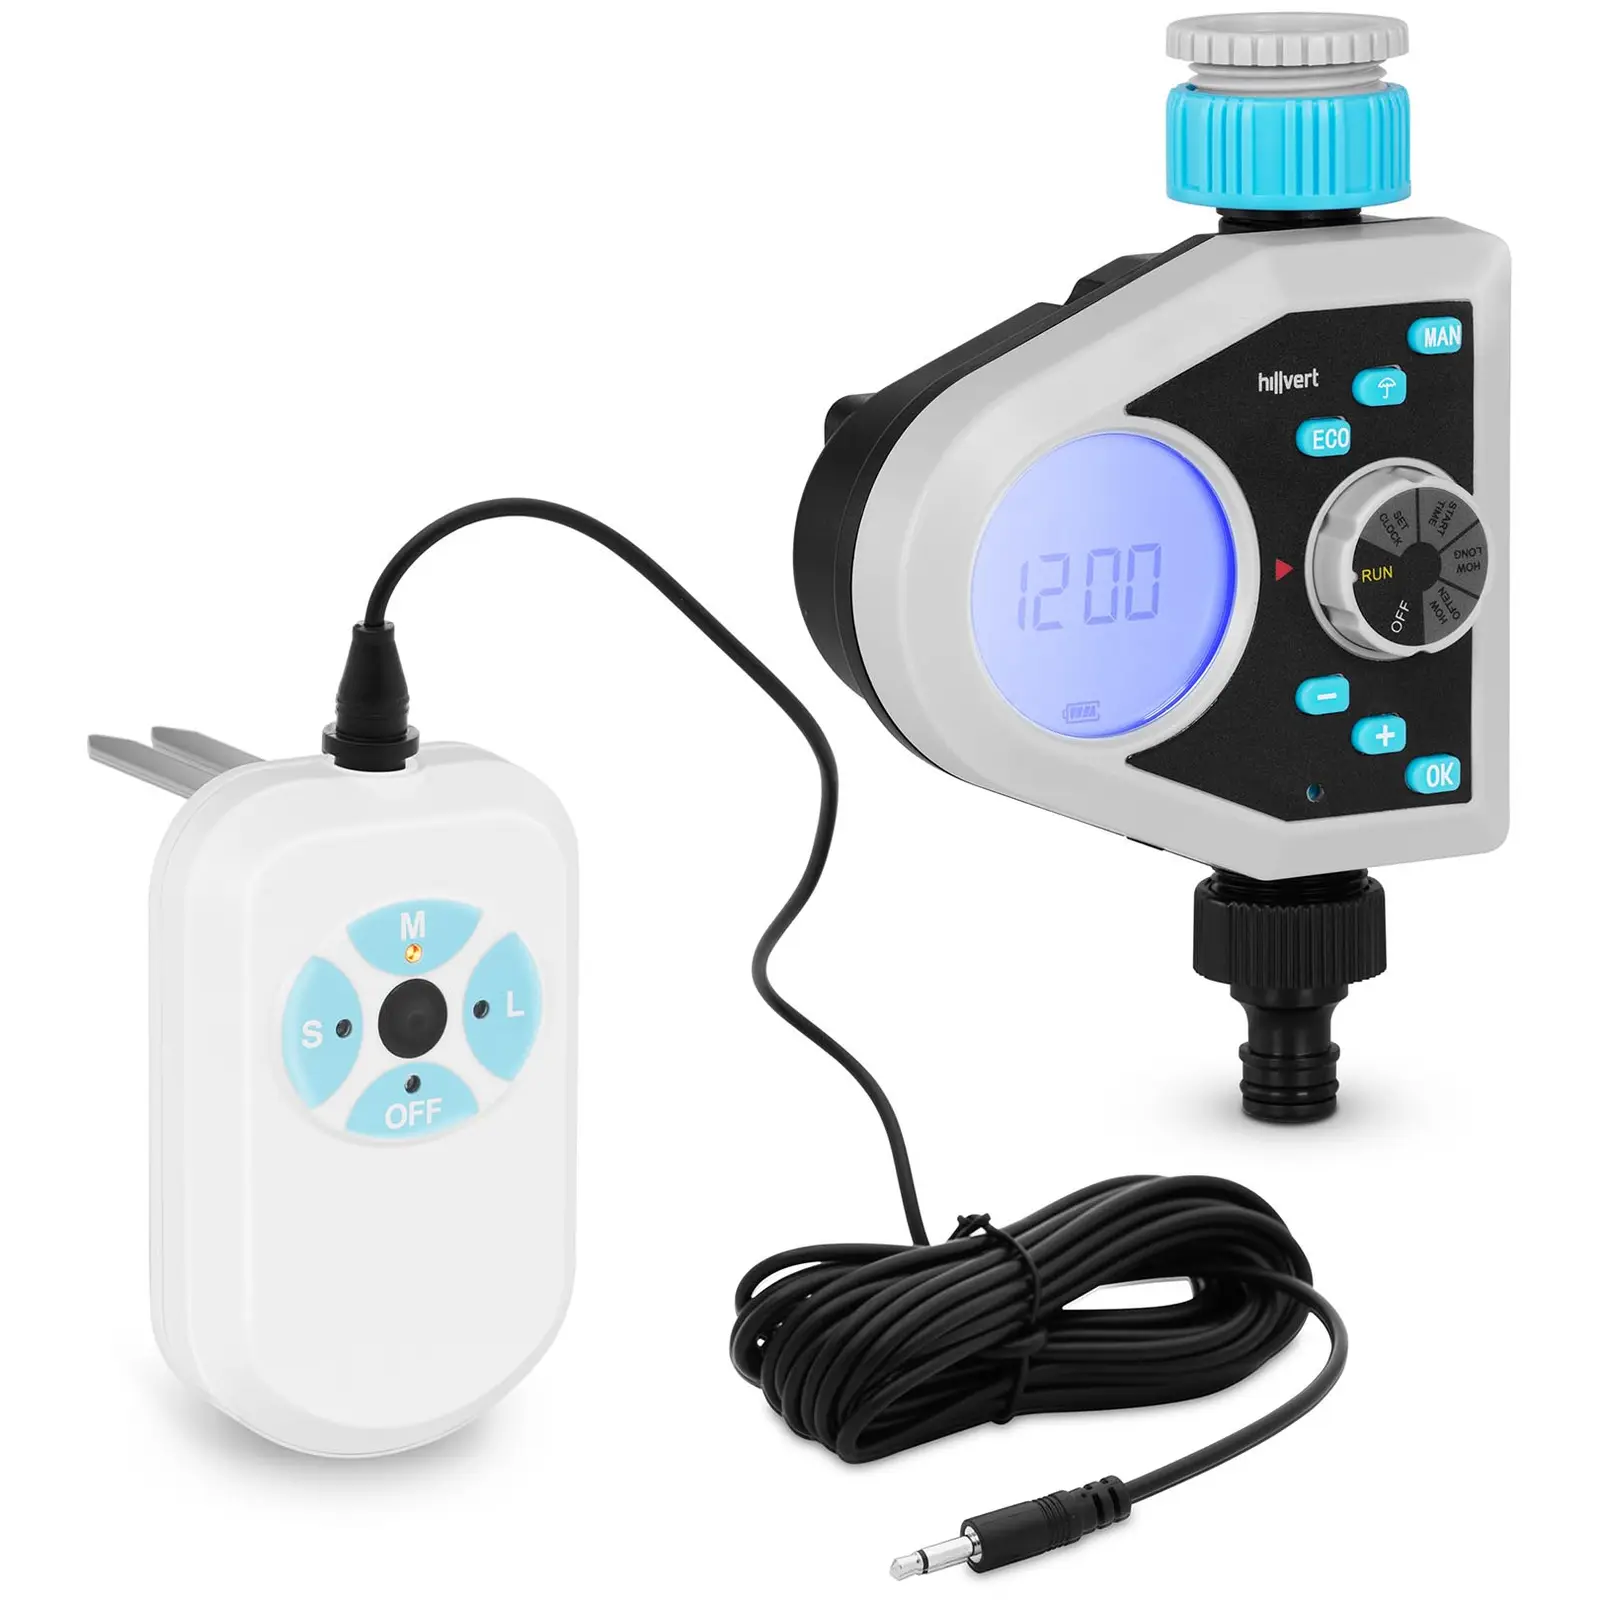 Programador de riego con sensor de humedad - 1 - 240 min - Frecuencia hasta 15 días